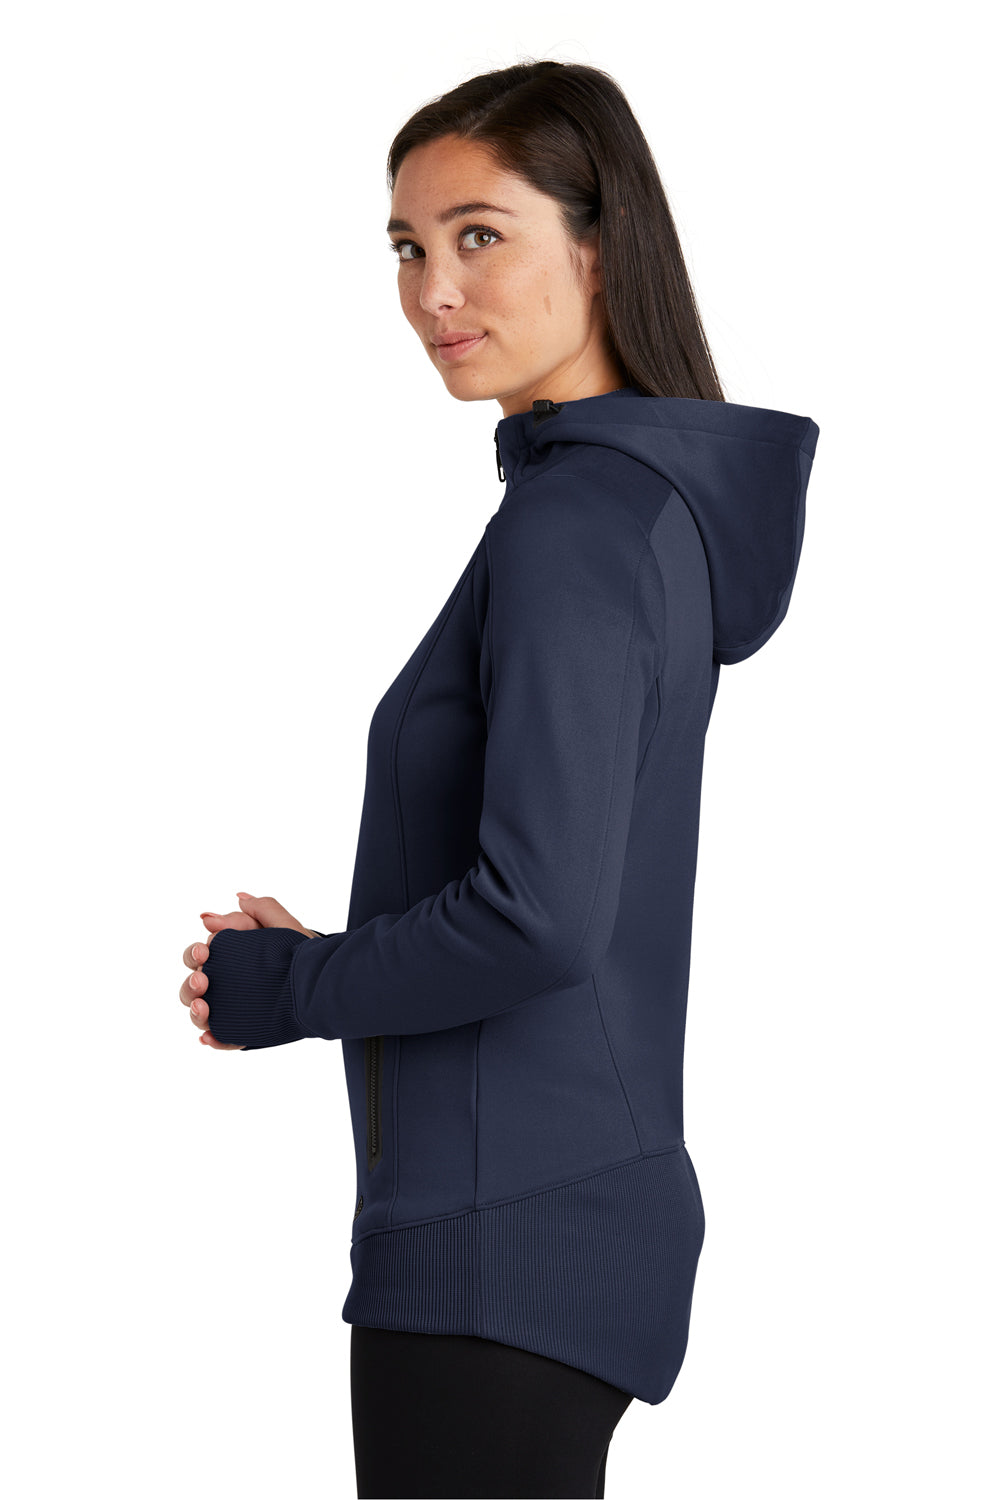 New Era LNEA522 Womens Venue Moisture Wicking Fleece Full Zip Hooded Sweatshirt Hoodie Navy Blue Side